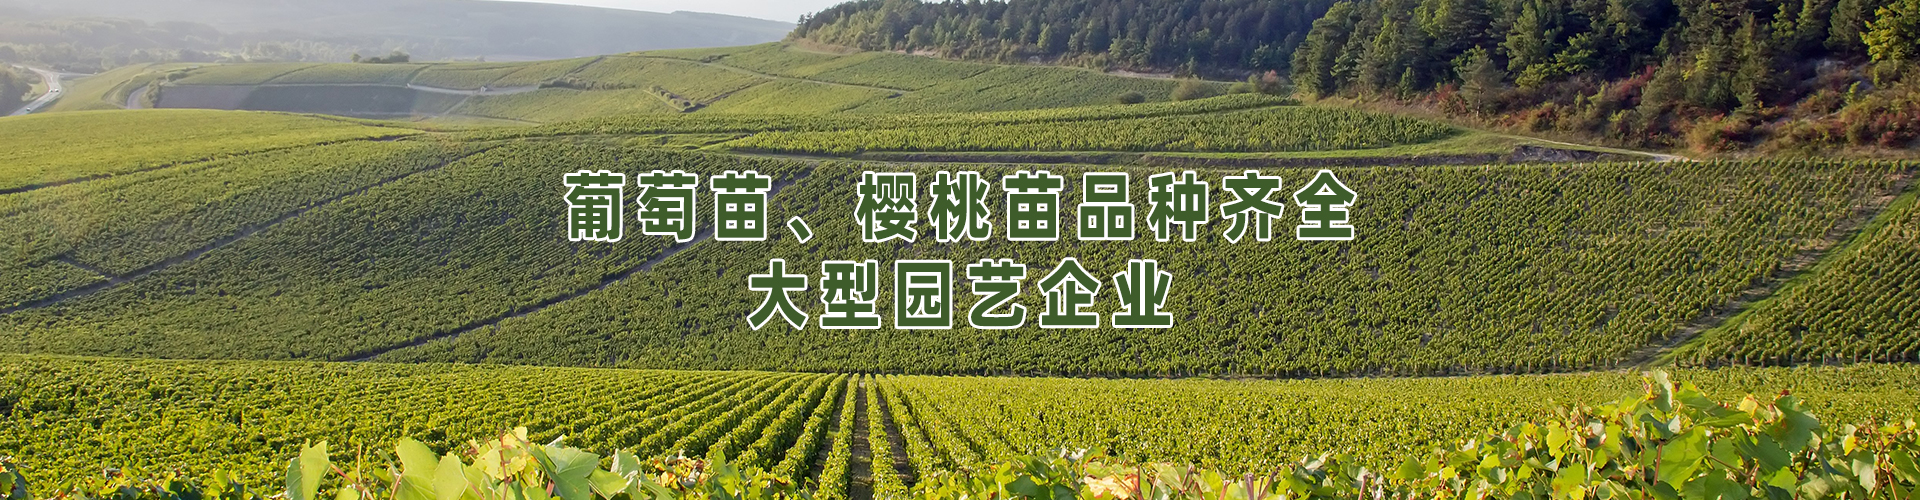 青岛丰宏农业科技有限公司